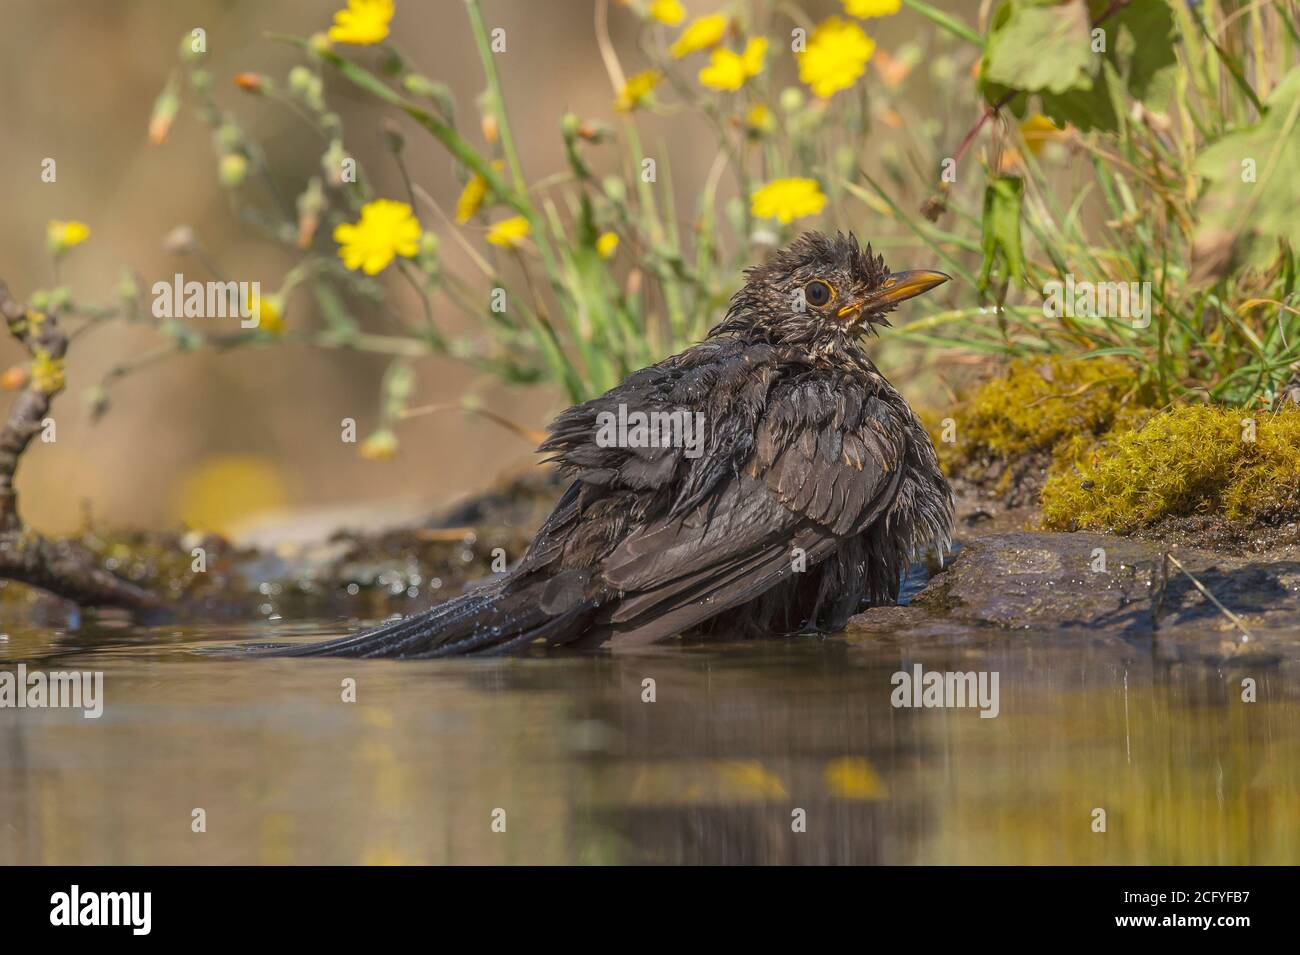 Turdus merula is known as the common black European thrush. Stock Photo